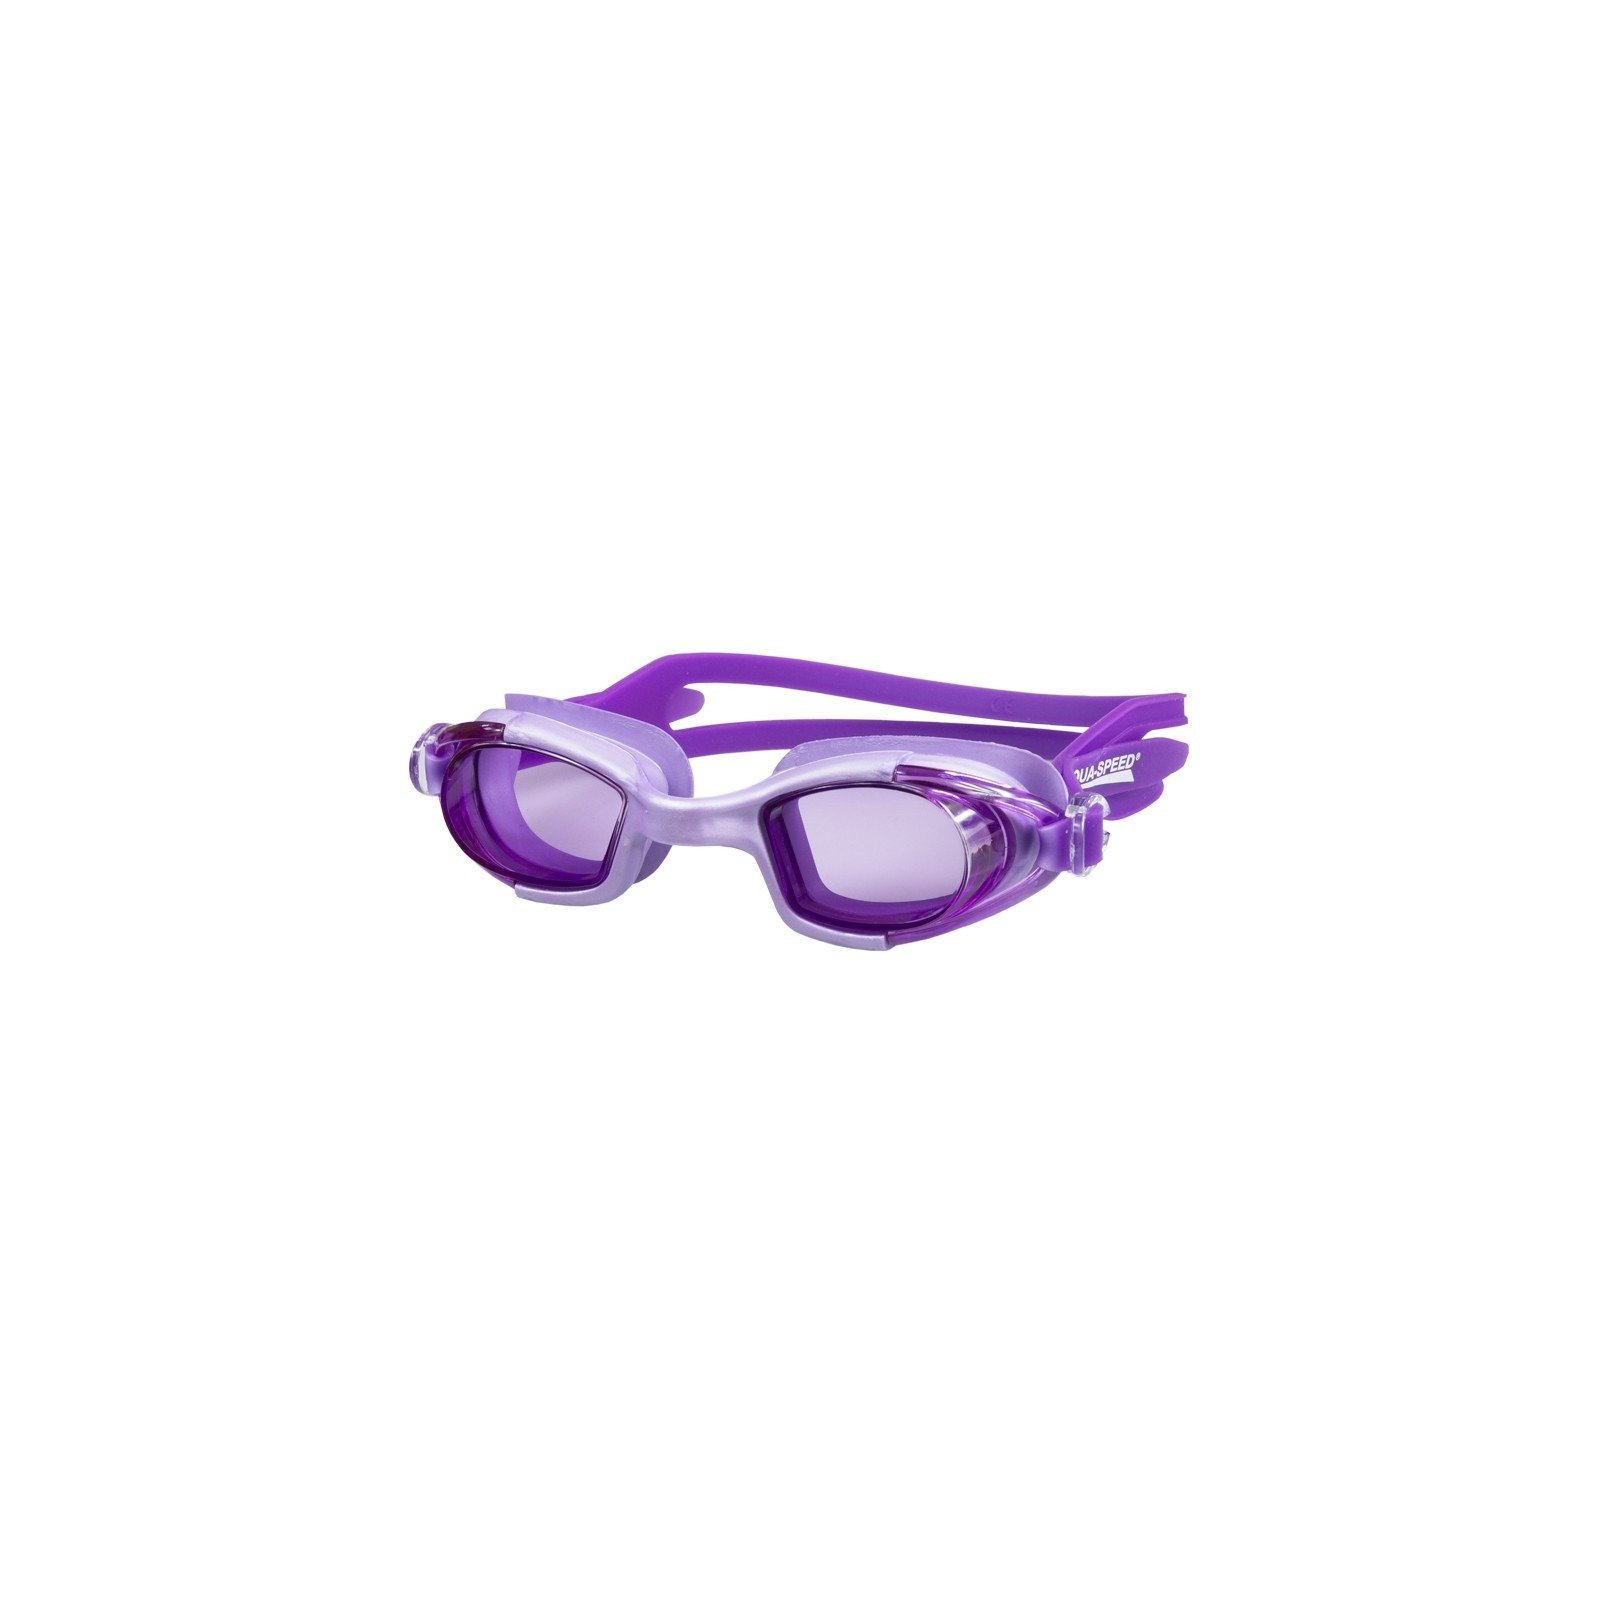 Окуляри для плавання Aqua Speed Marea JR 014-09 фіолетовий OSFM (5908217629395)